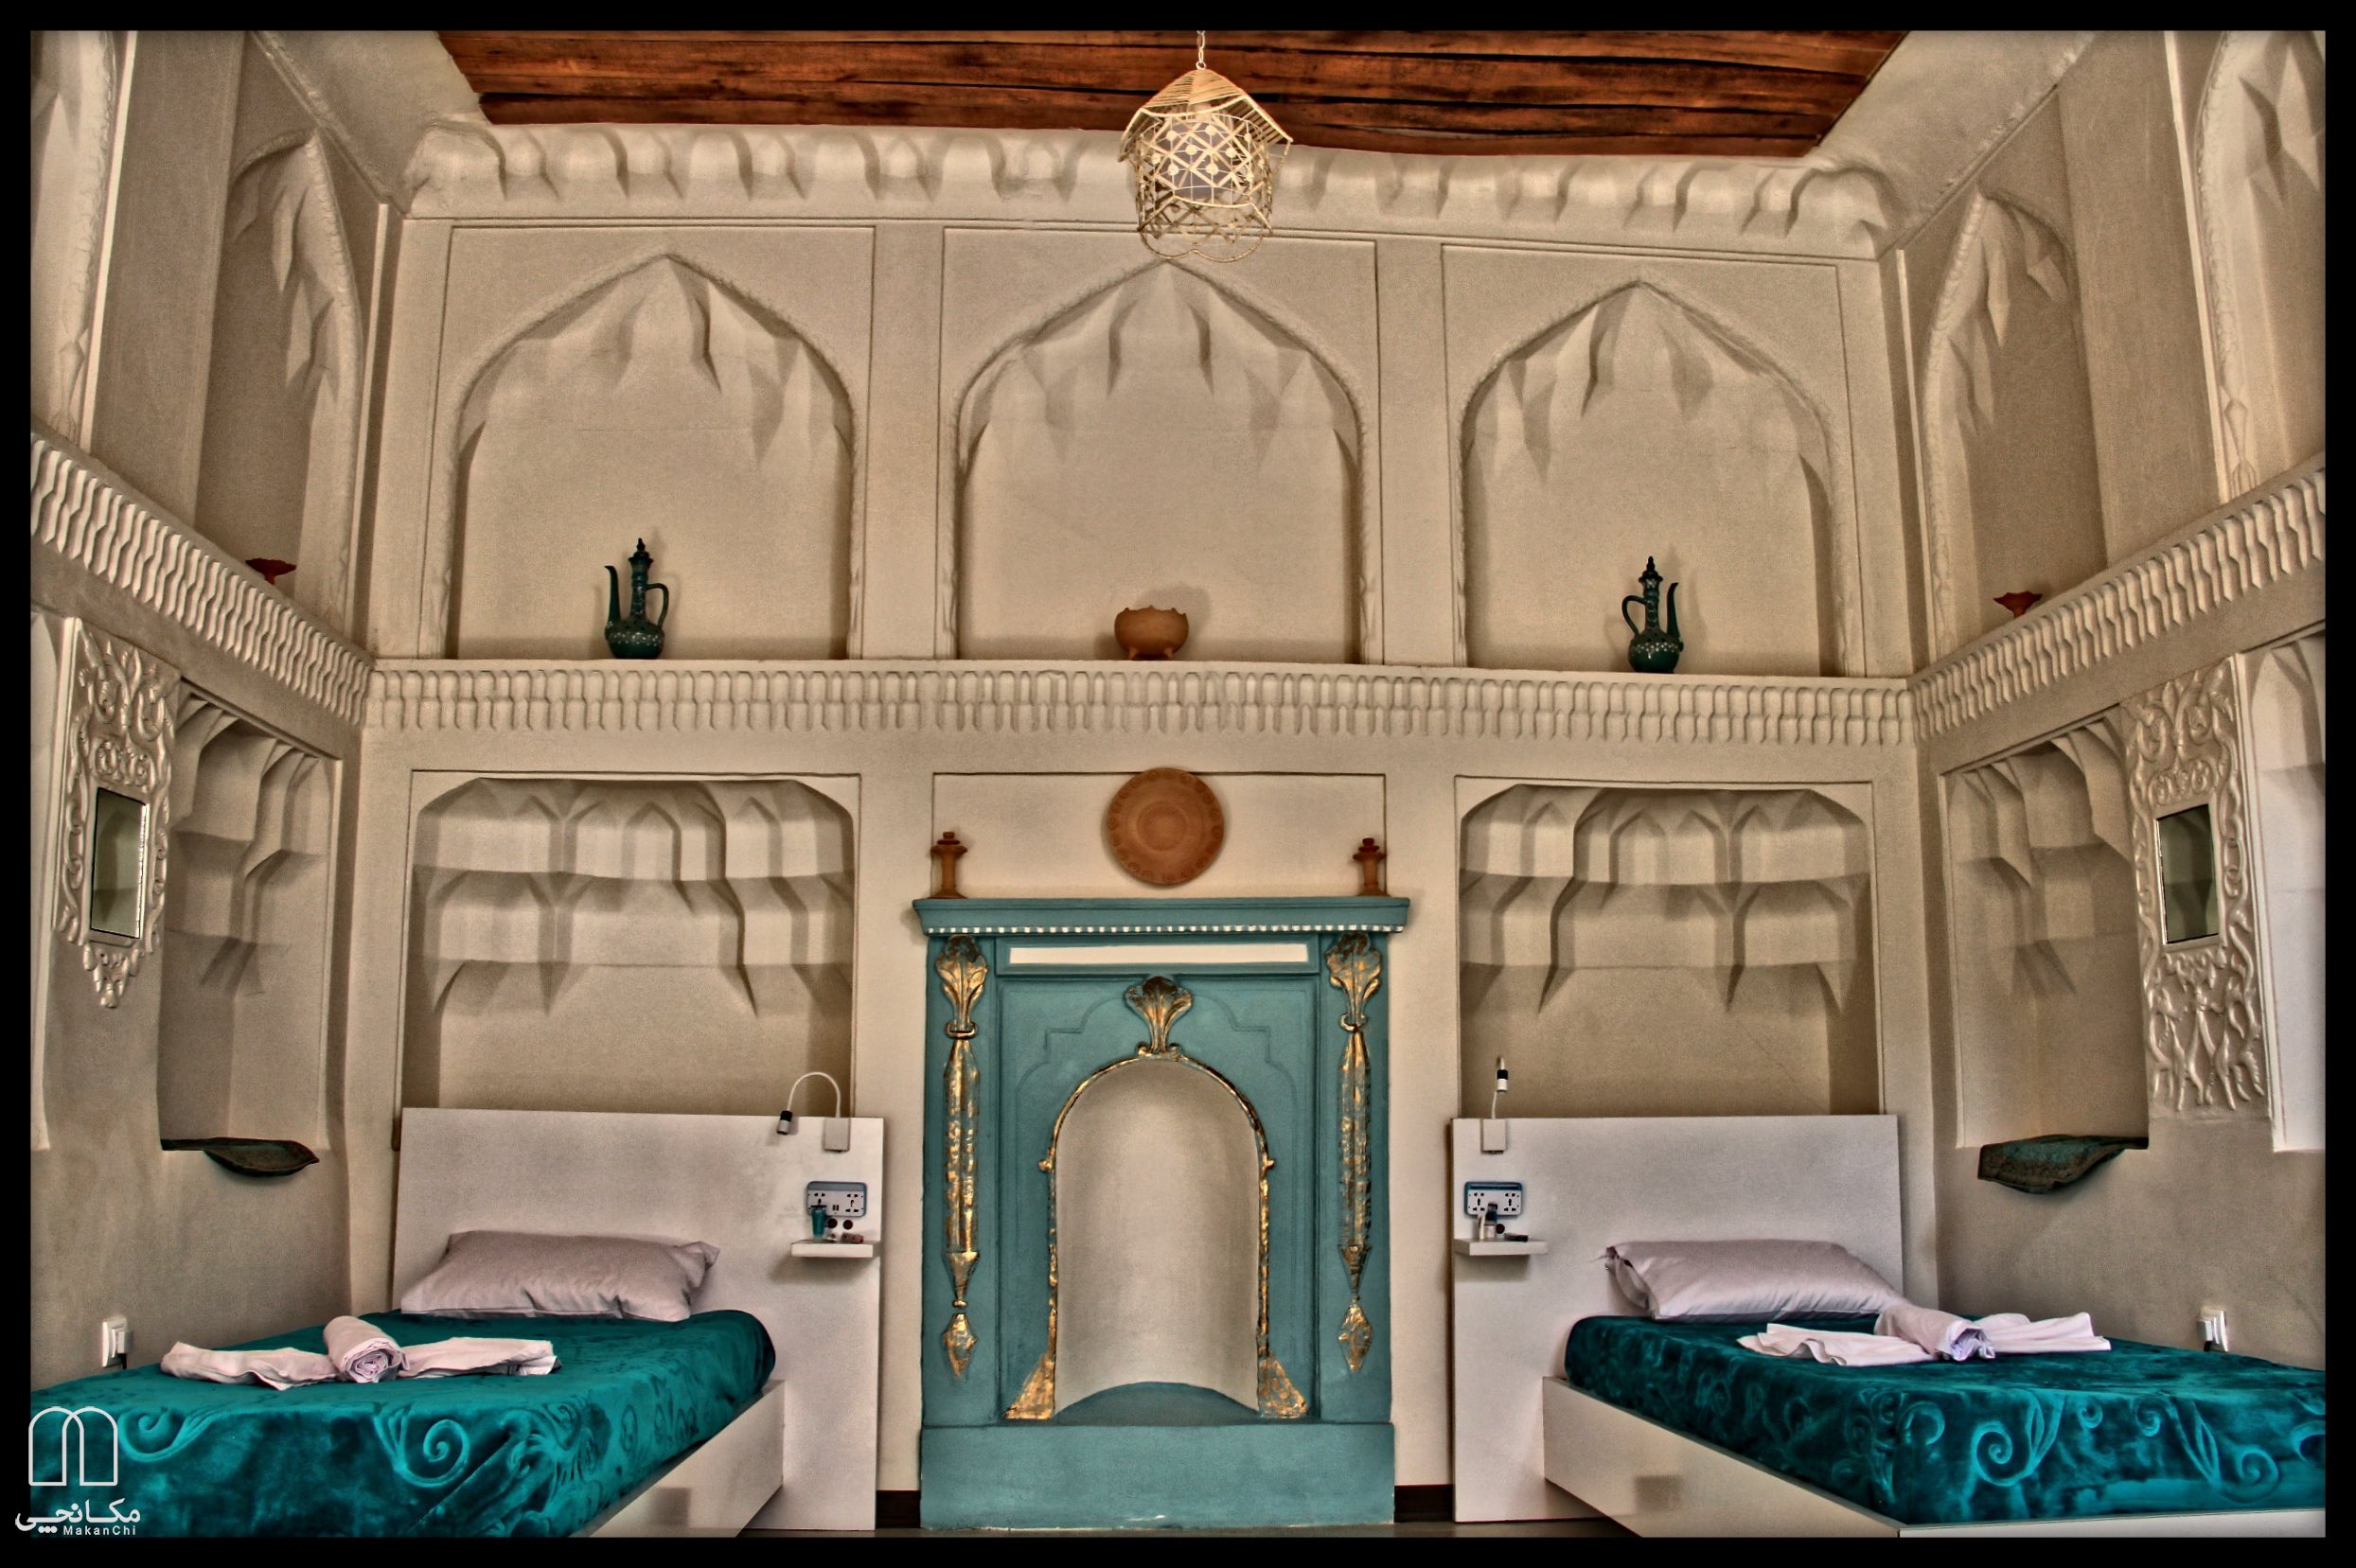 اقامتگاه بومگردی طاها در اصفهان